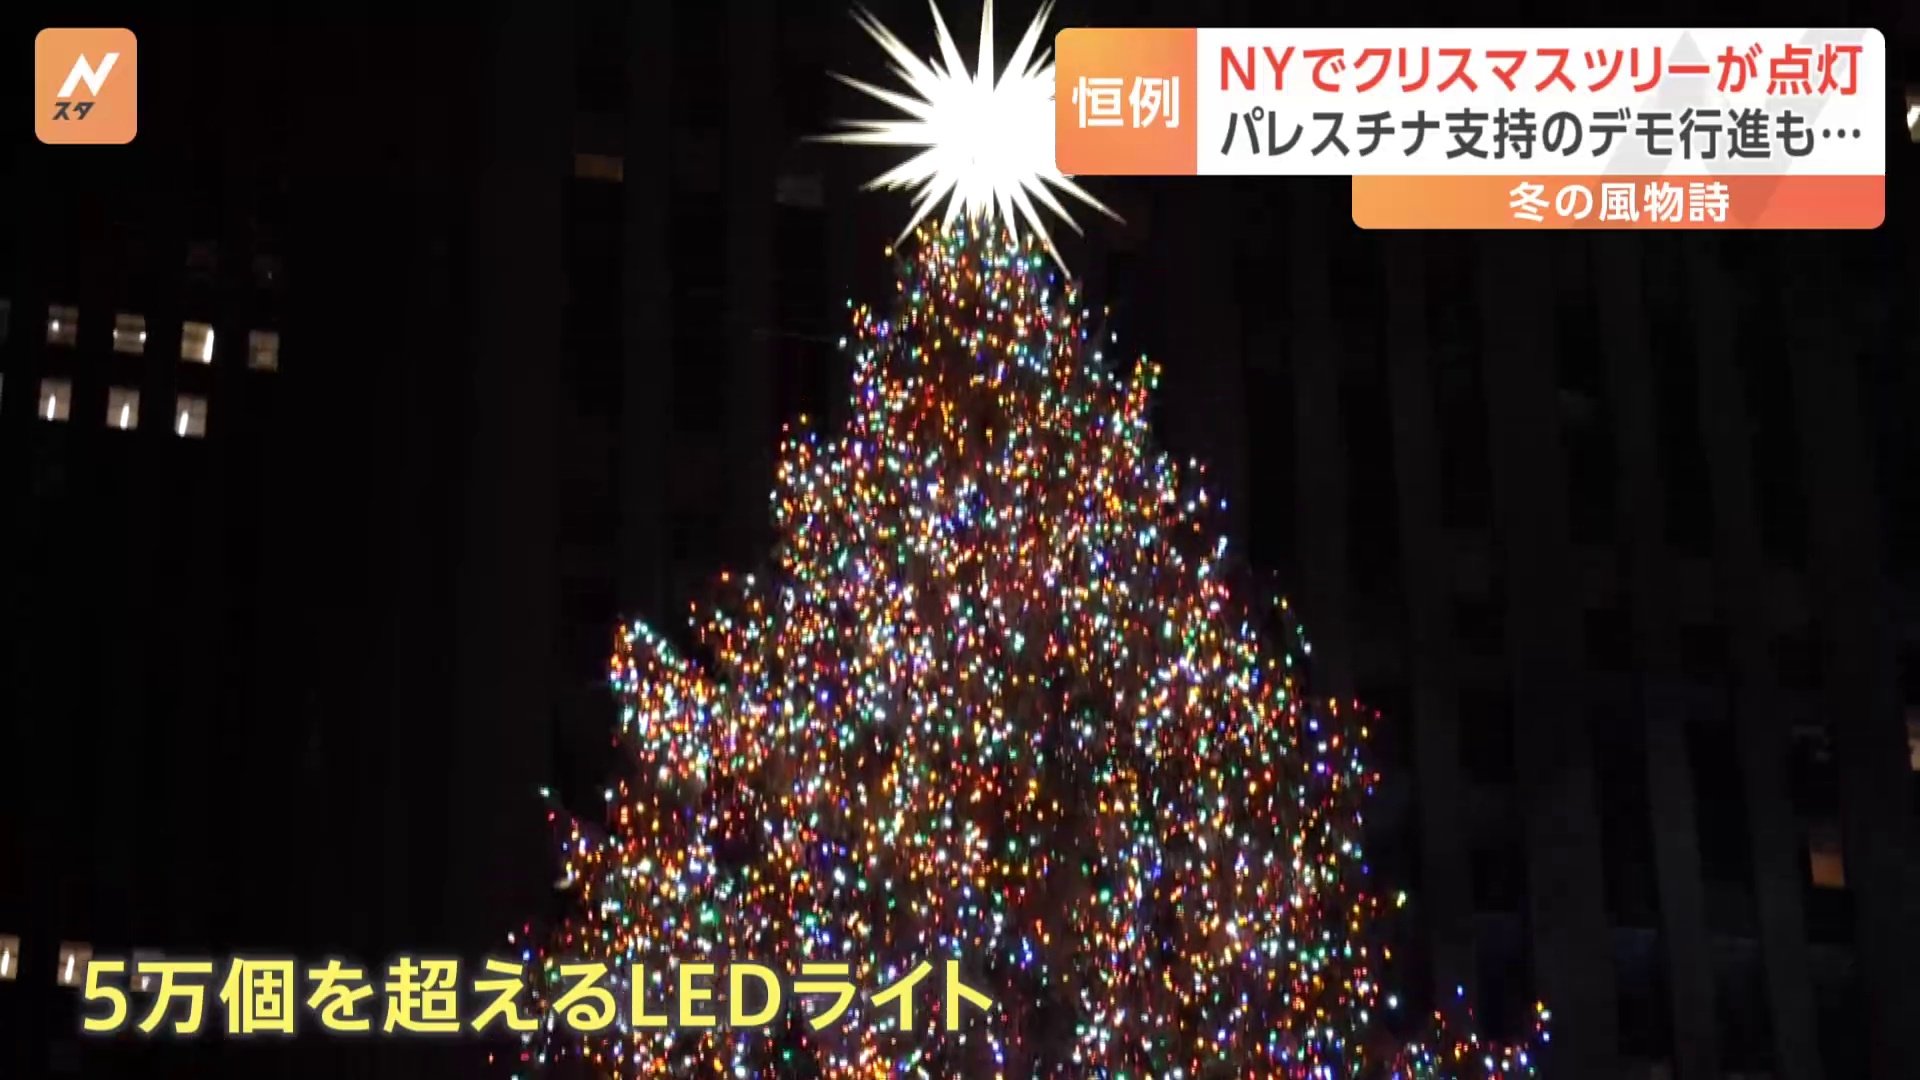 ニューヨークでは今年も、クリスマスシーズンの訪れを告げるツリーの点灯式が行われました。29日、ニューヨークでクリスマスシーズンの本格的な到来を告げる、ロックフェラーセンターのツリーの点灯式が行…